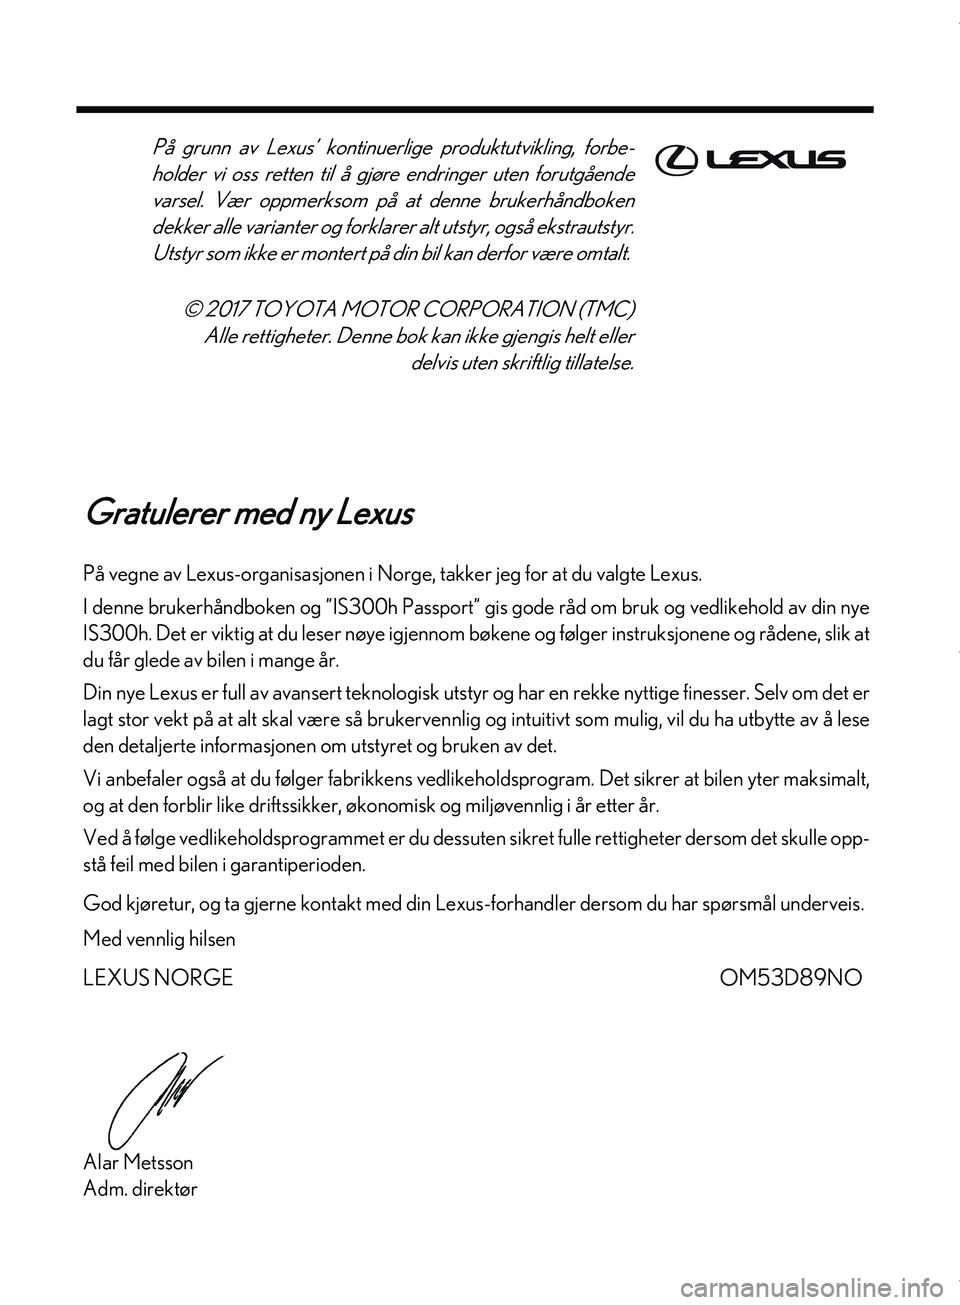 Lexus IS300h 2017  Brukerhåndbok (in Norwegian) Gratulerer med ny Lexus
På vegne av Lexus-organisasjonen i Norge, takker jeg for at du valgte Lexus.
I denne brukerhåndboken og  ”IS300h Passport” gis gode råd om  bruk og vedlikehold av din ny